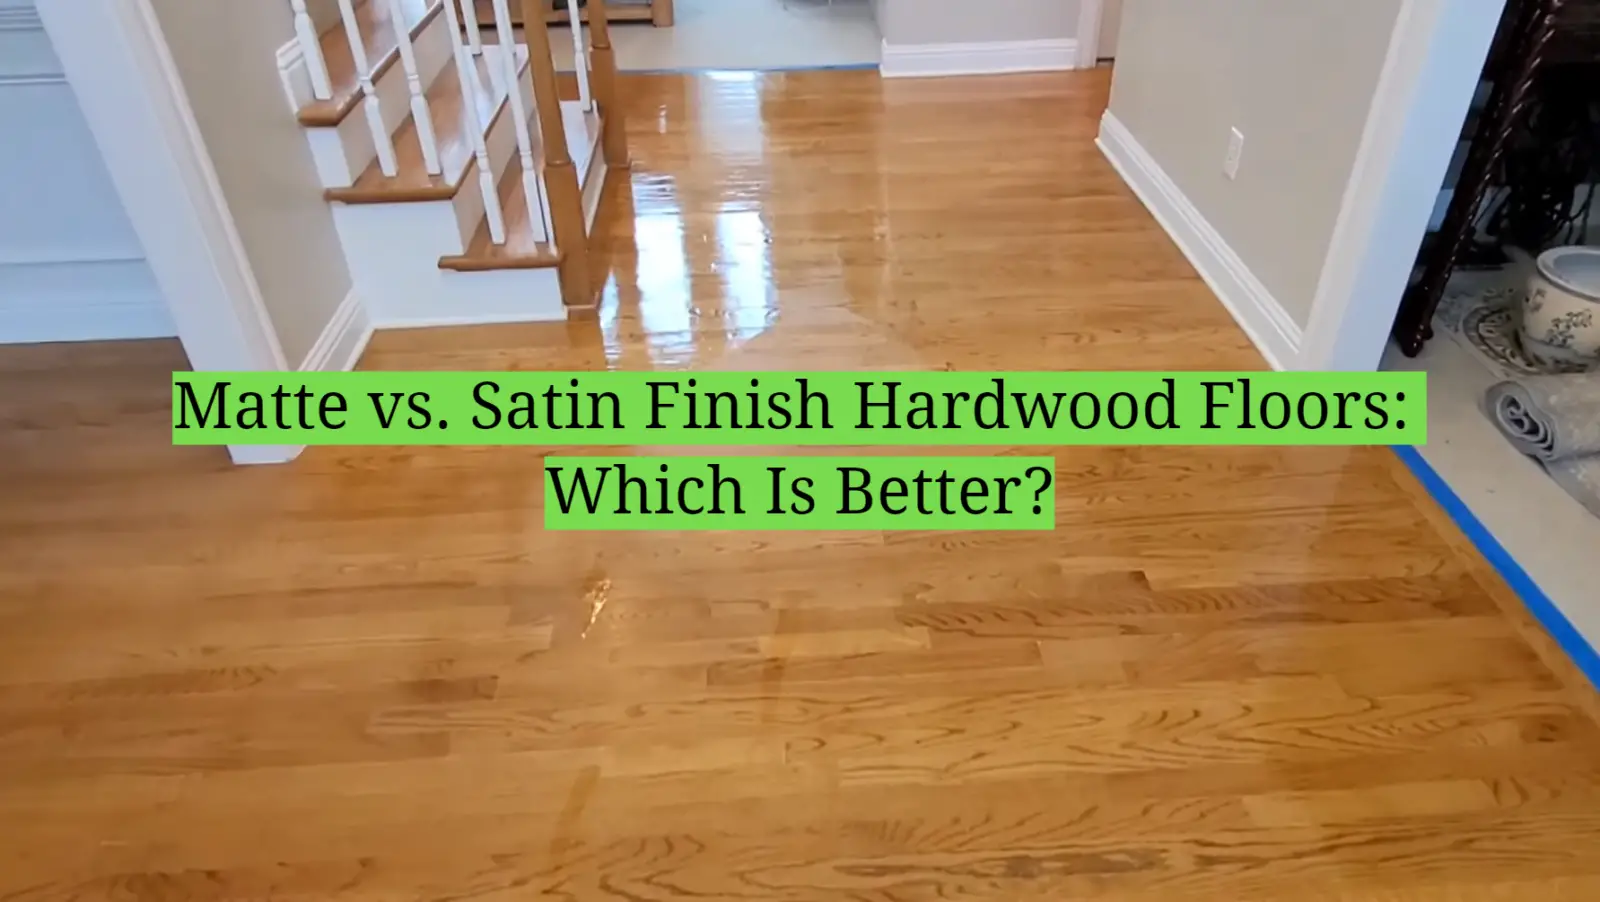 Matte vs. Satin Finish Hardwood Floors: Which Is Better?